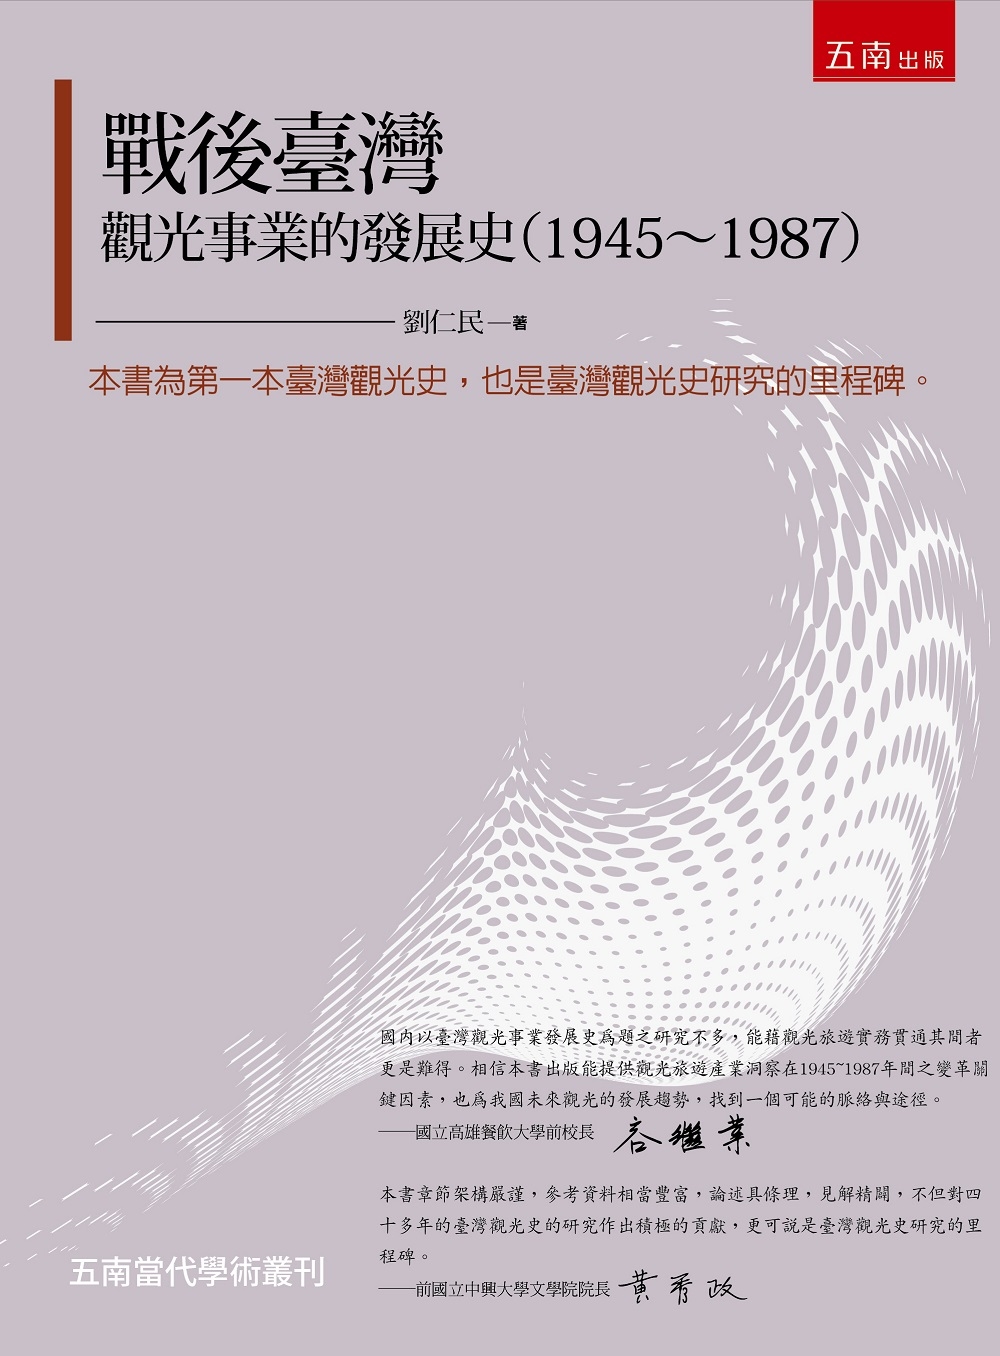 戰後臺灣觀光事業的發展史